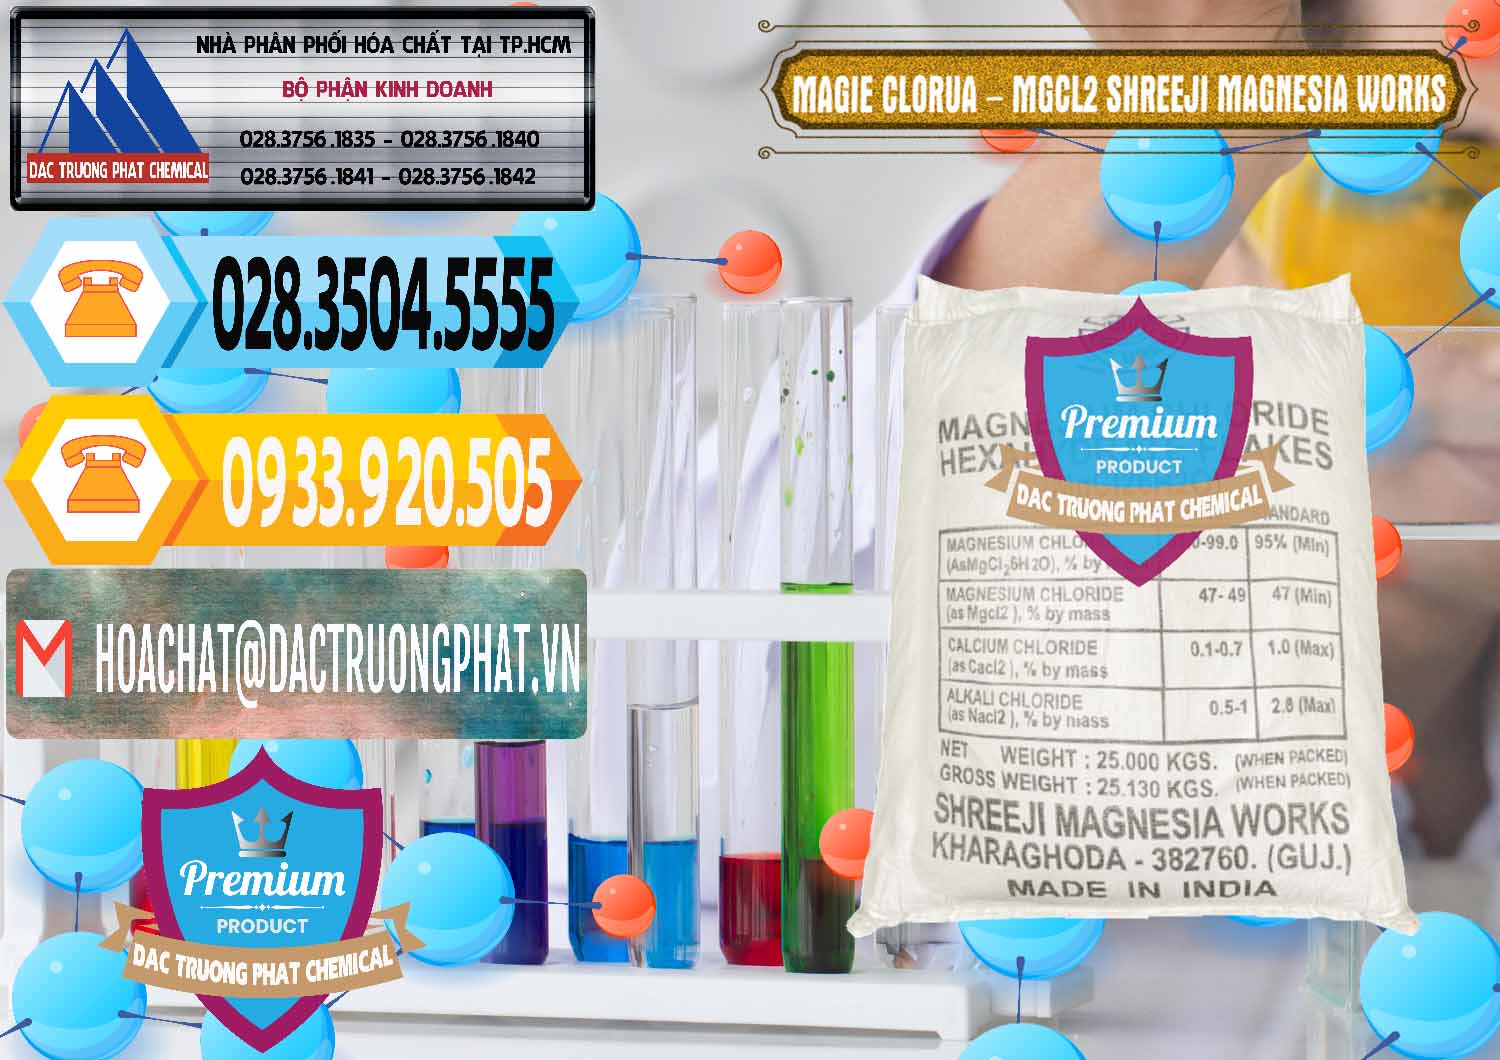 Công ty chuyên bán & phân phối Magie Clorua – MGCL2 Dạng Vảy Shreeji Magnesia Works Ấn Độ India - 0285 - Cty chuyên bán ( cung cấp ) hóa chất tại TP.HCM - hoachattayrua.net